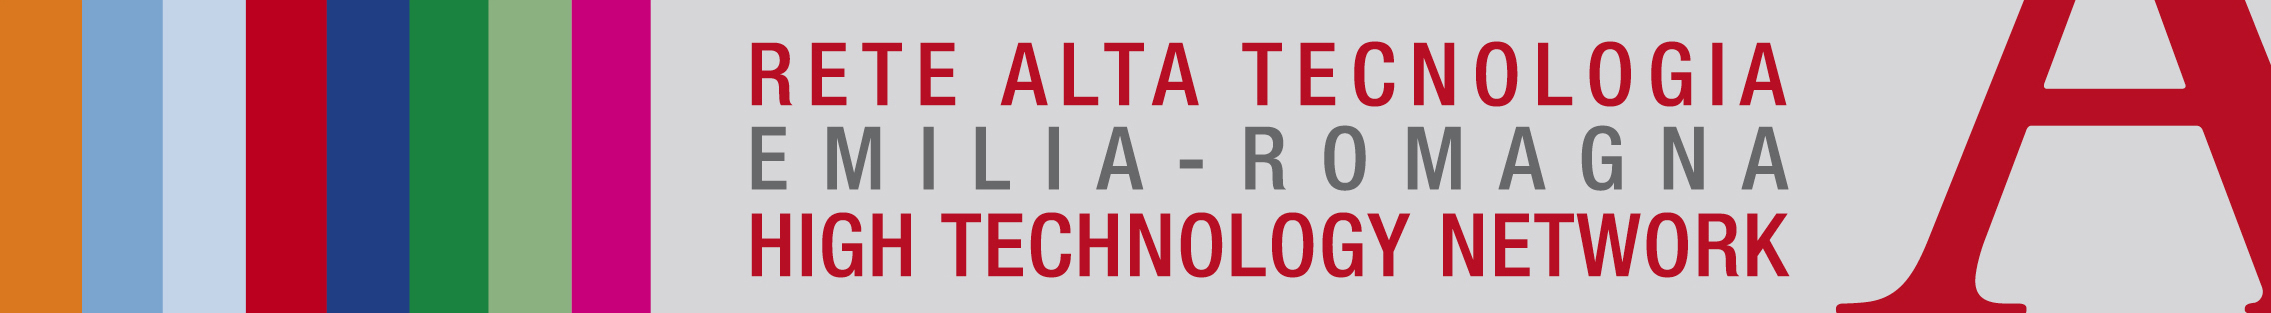 Rete Alta Tecnologia dell'Emilia Romagna